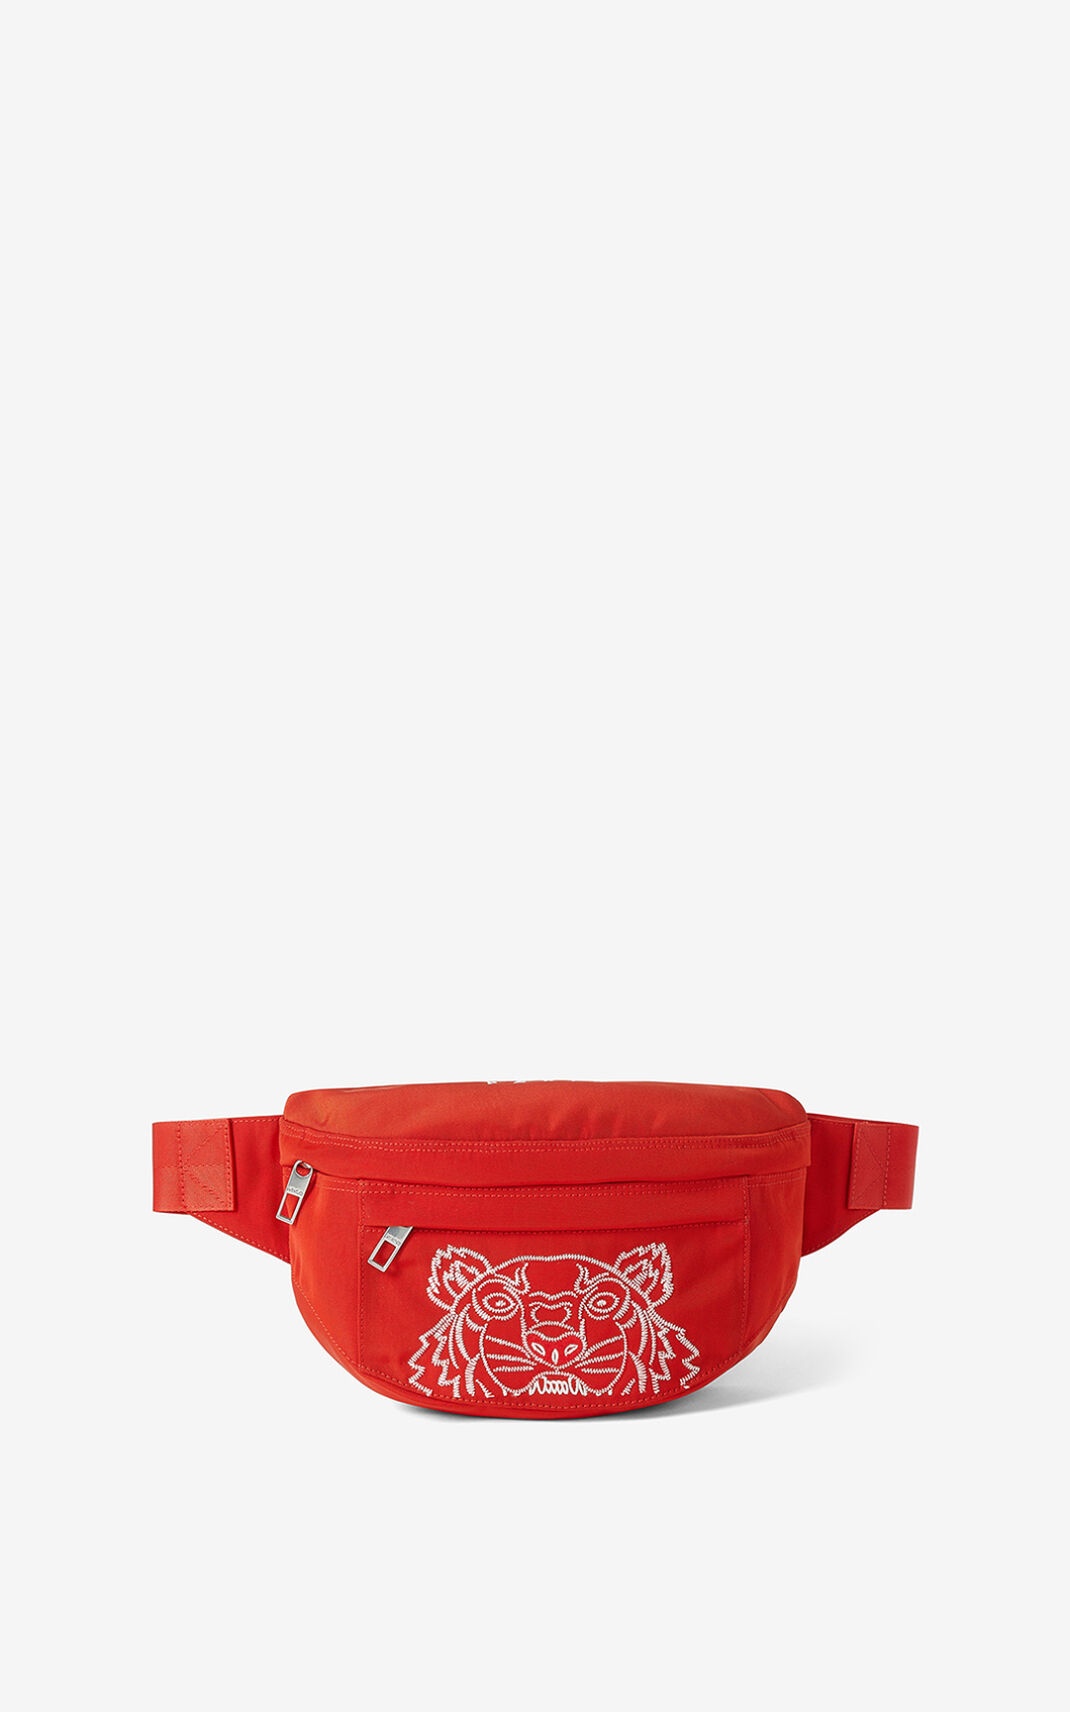 Tiger belt bag - 1